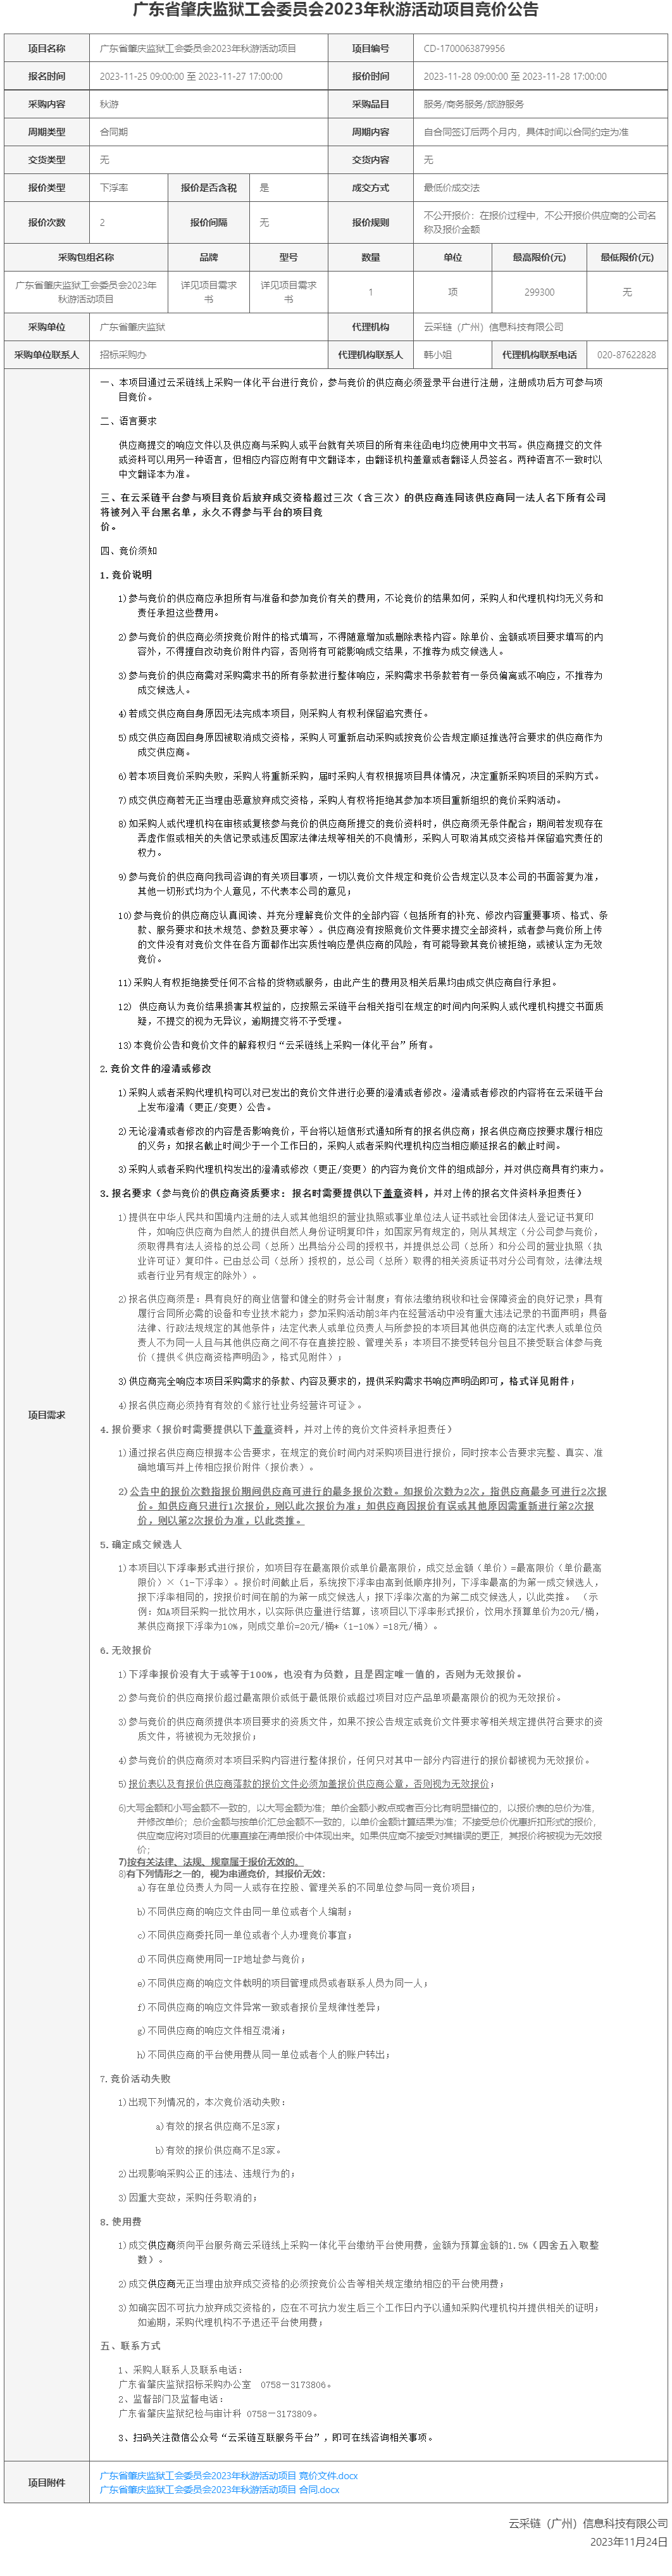 广东省肇庆监狱工会委员会2023年秋游活动项目竞价公告.png